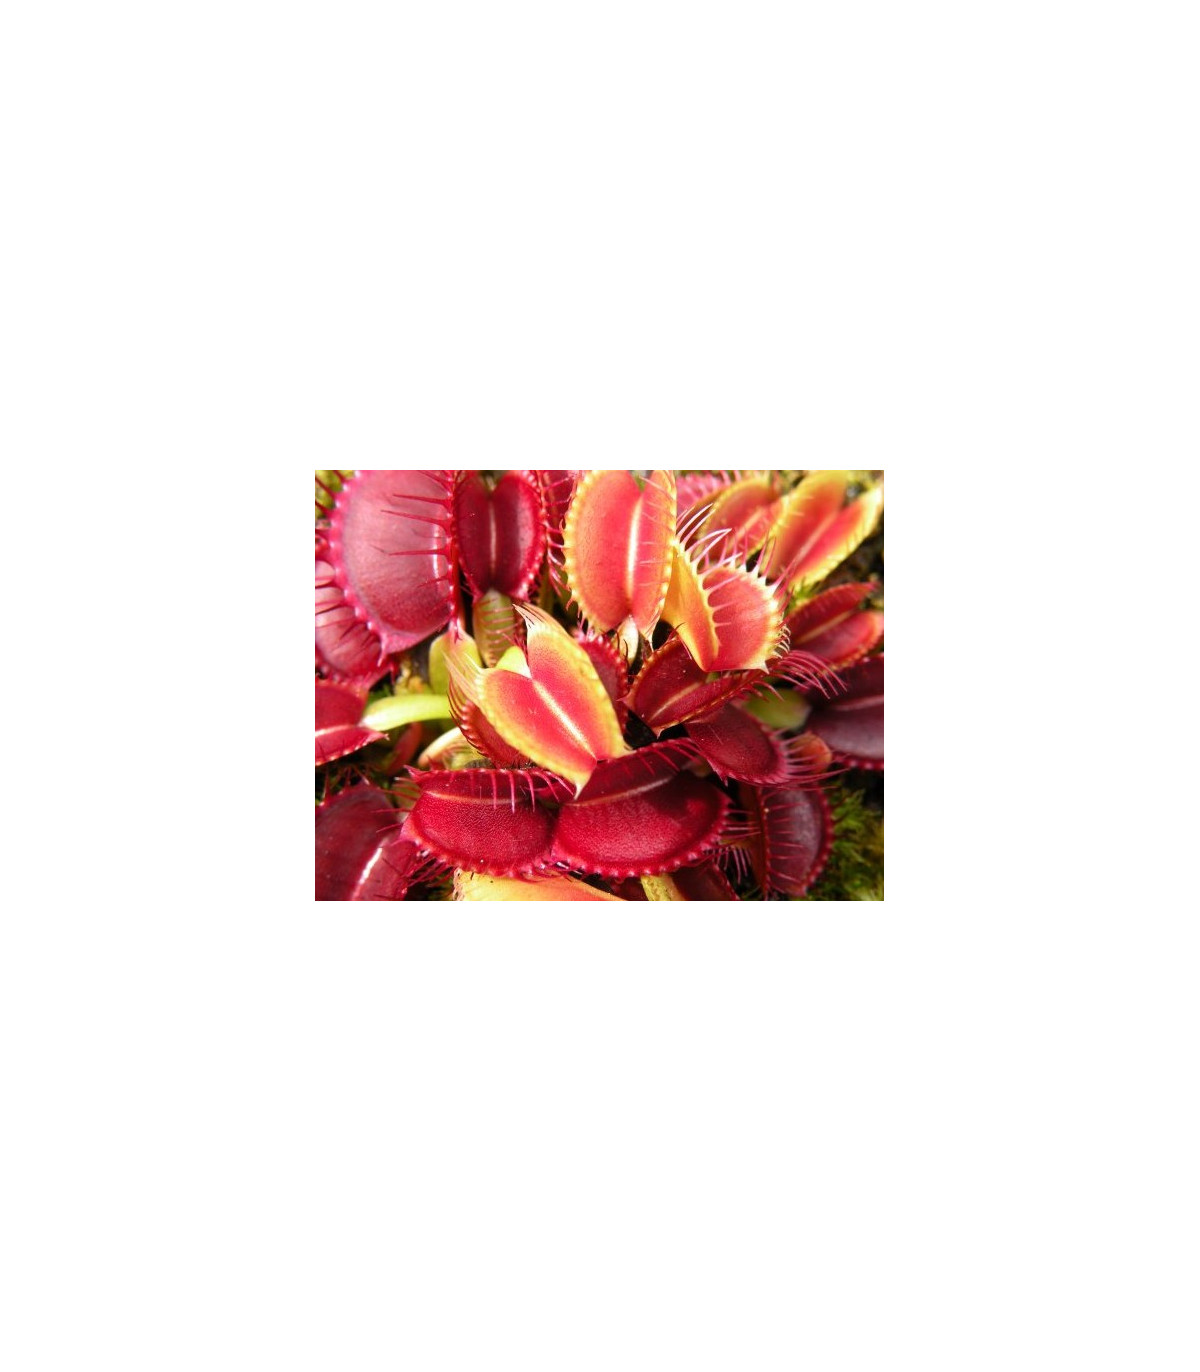 Semínka mucholapky – Dionaea muscipla - Mucholapka červená Redline  - prodej semen - 10 ks